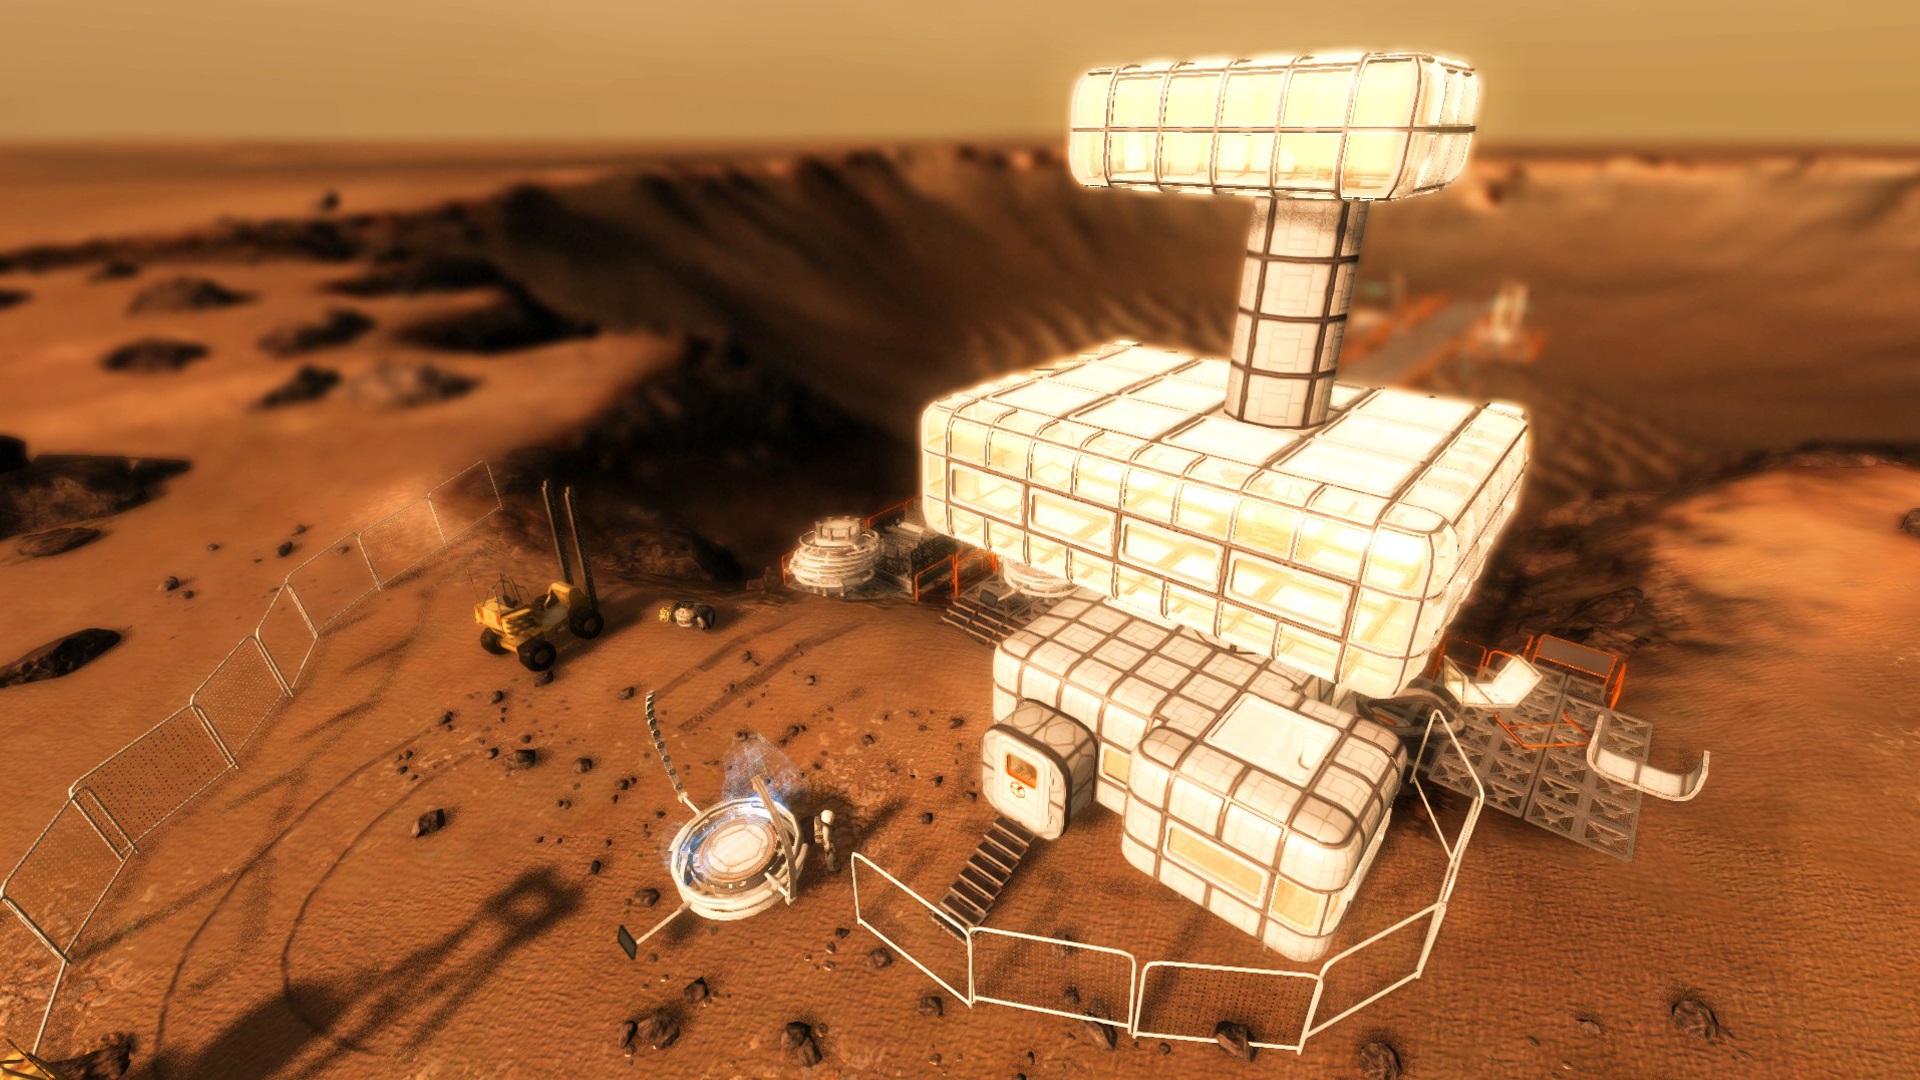 Take On Mars screenshot